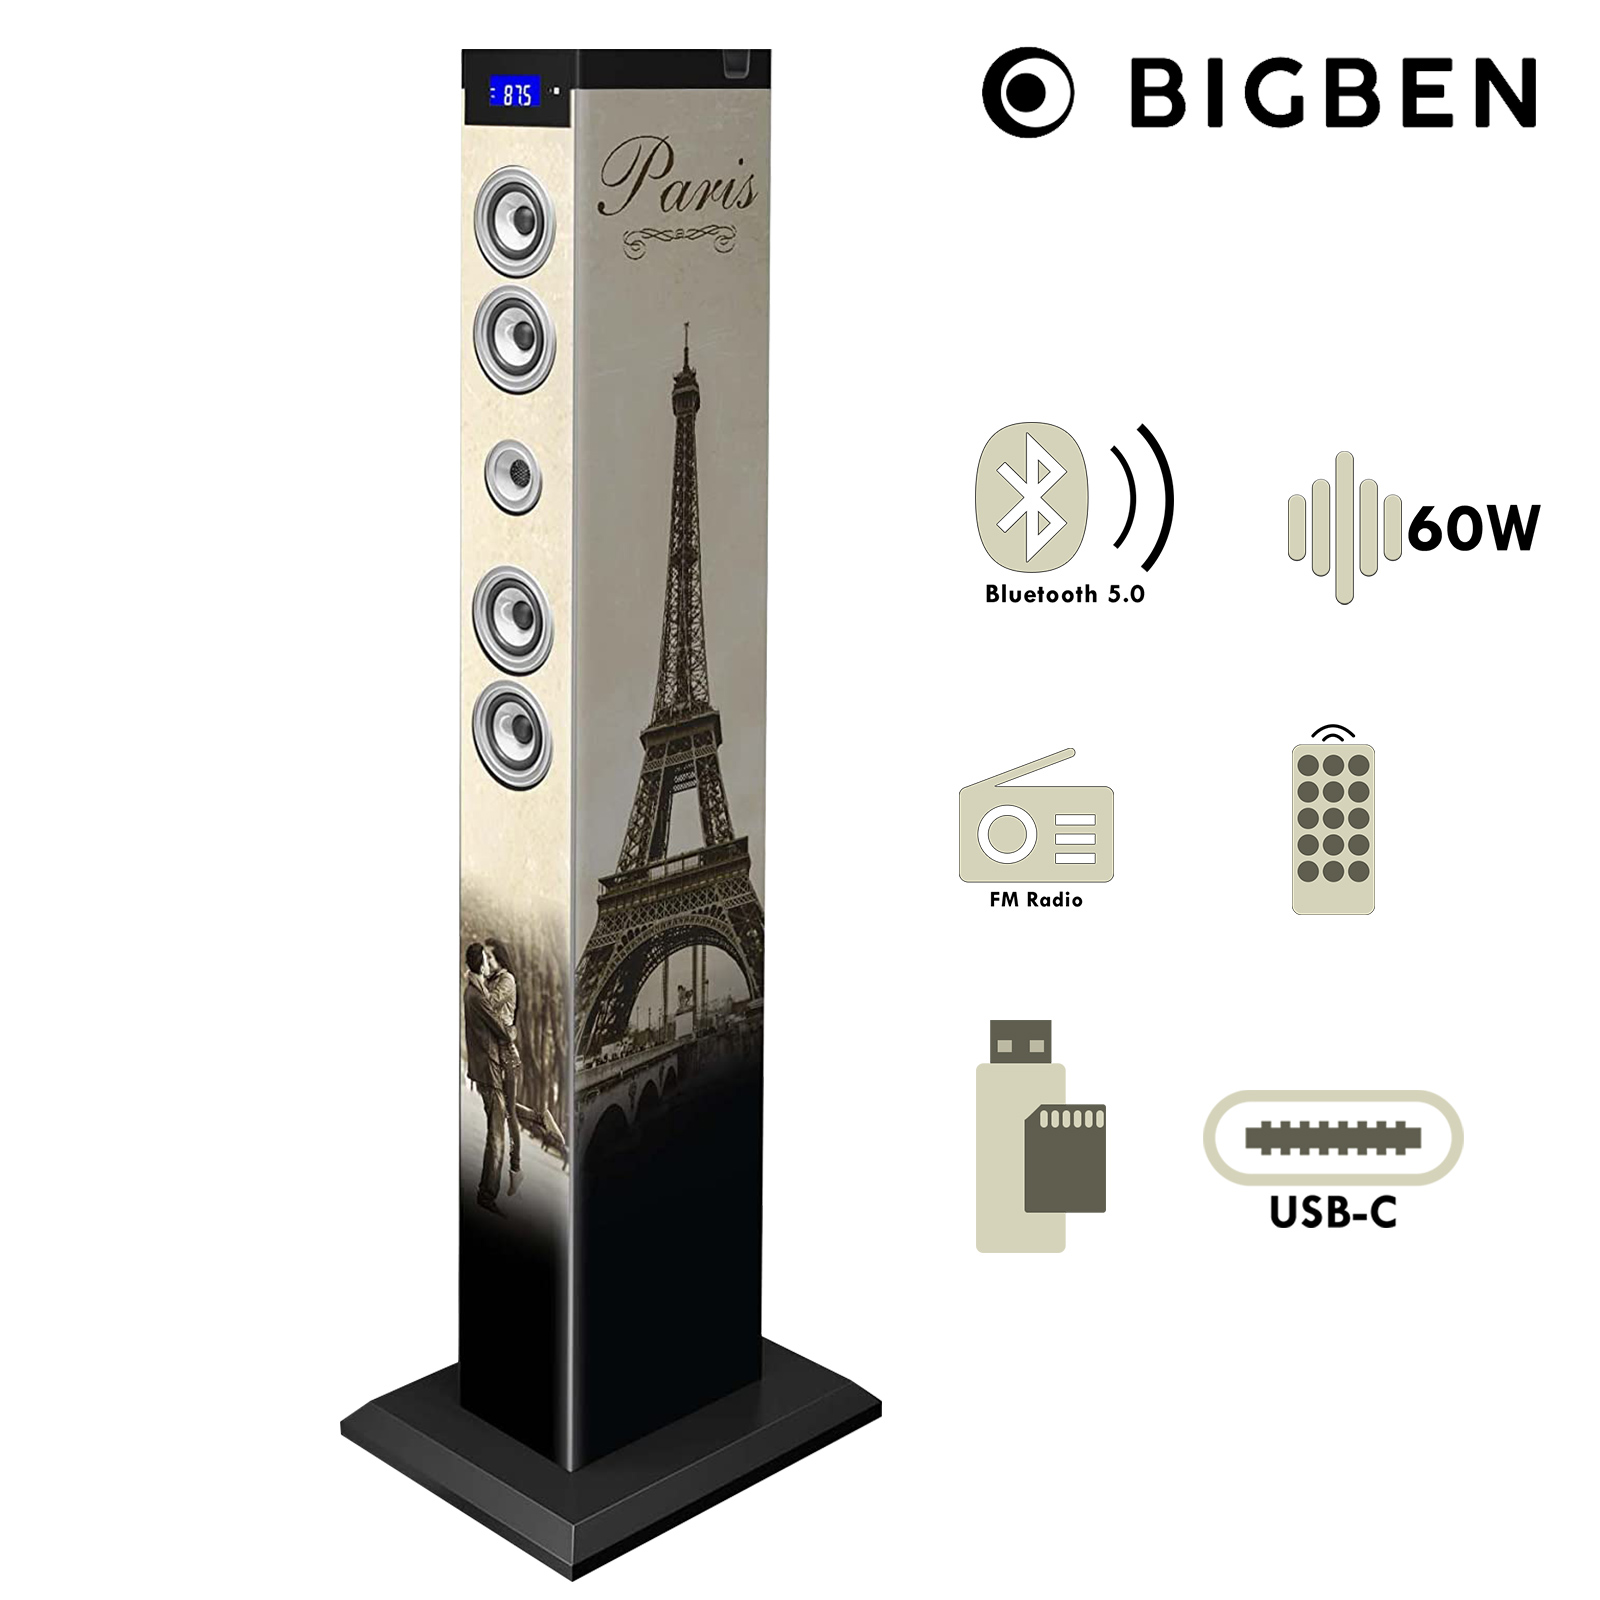 Enceinte Bluetooth Paris 60W, Station d'accueil USB-C - Tour Multimédia  Bigben - Français